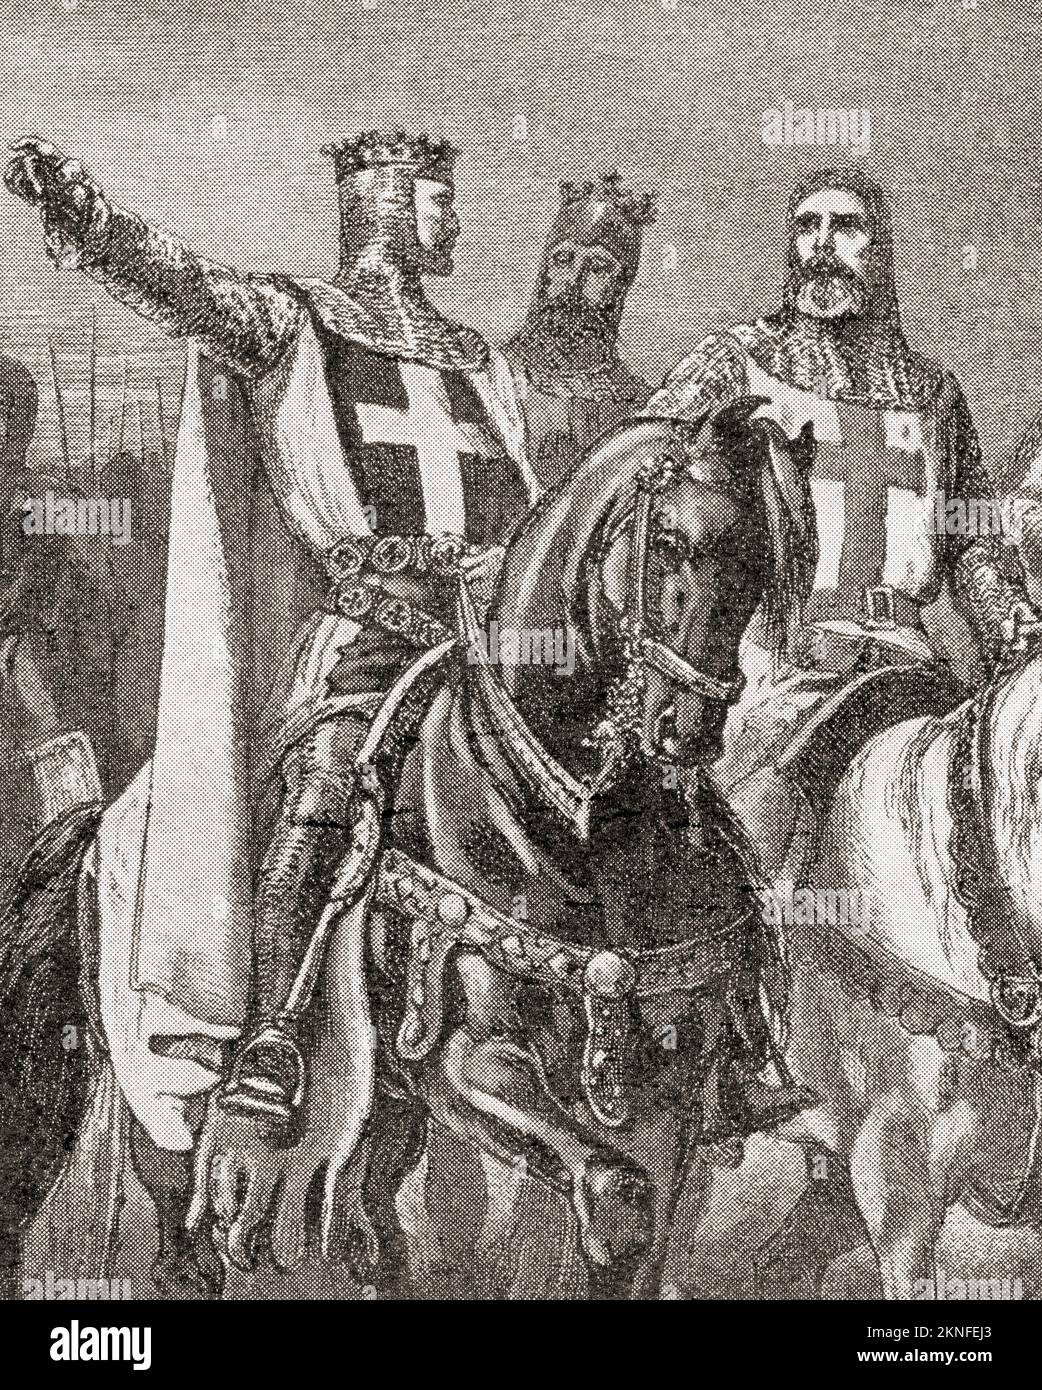 Richard I, alias Richard Cœur de Lion o Richard el Corazón de León 1157 – 1199. Rey de Inglaterra. Visto aquí durante la tercera cruzada. De Historia de Inglaterra, publicado en 1907 Foto de stock